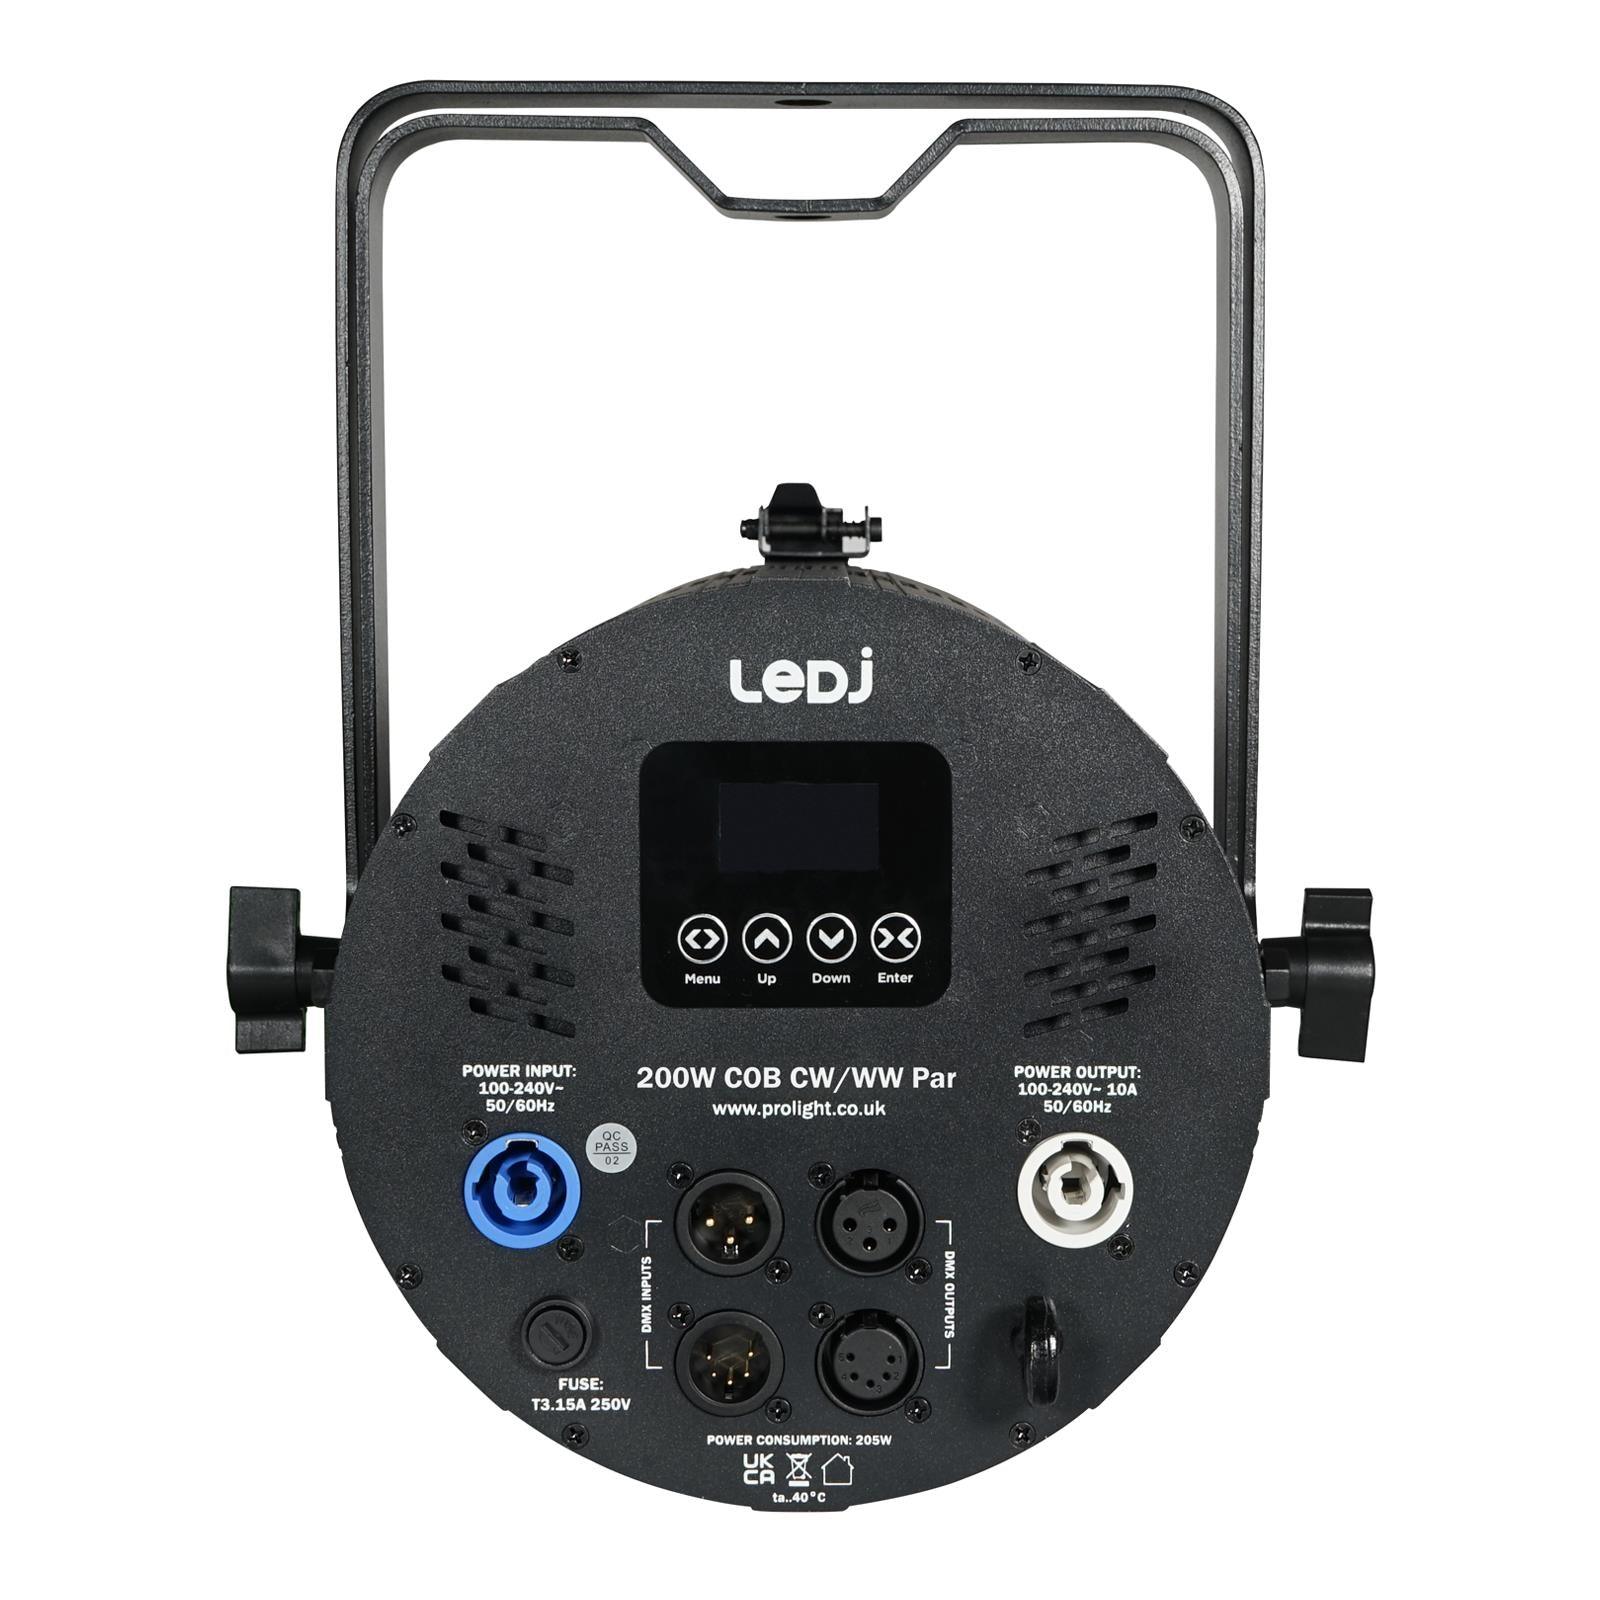 LEDJ 200W COB CW/WW Par Can - DY Pro Audio